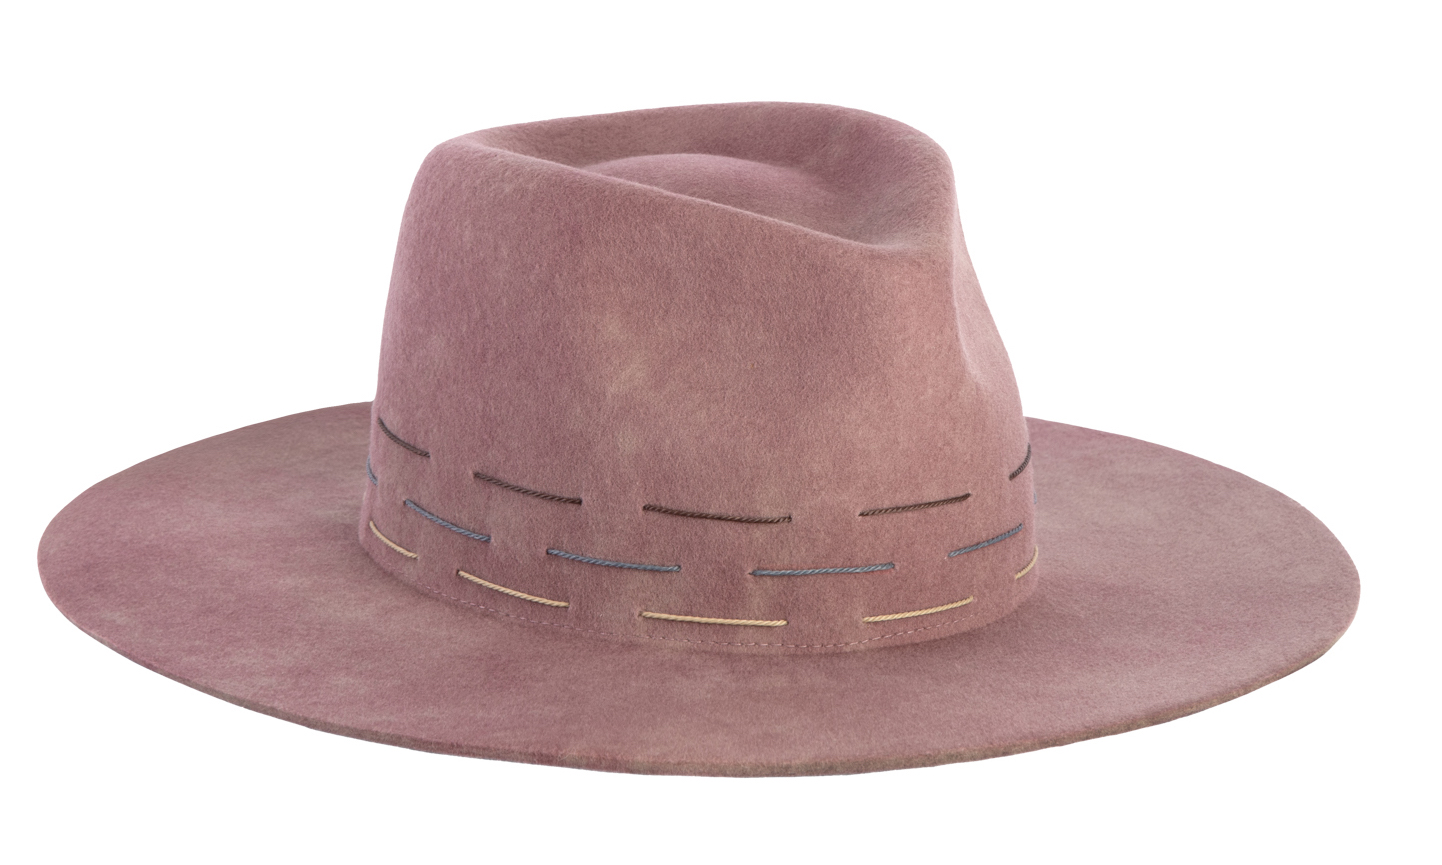 pike hat in dusty rose